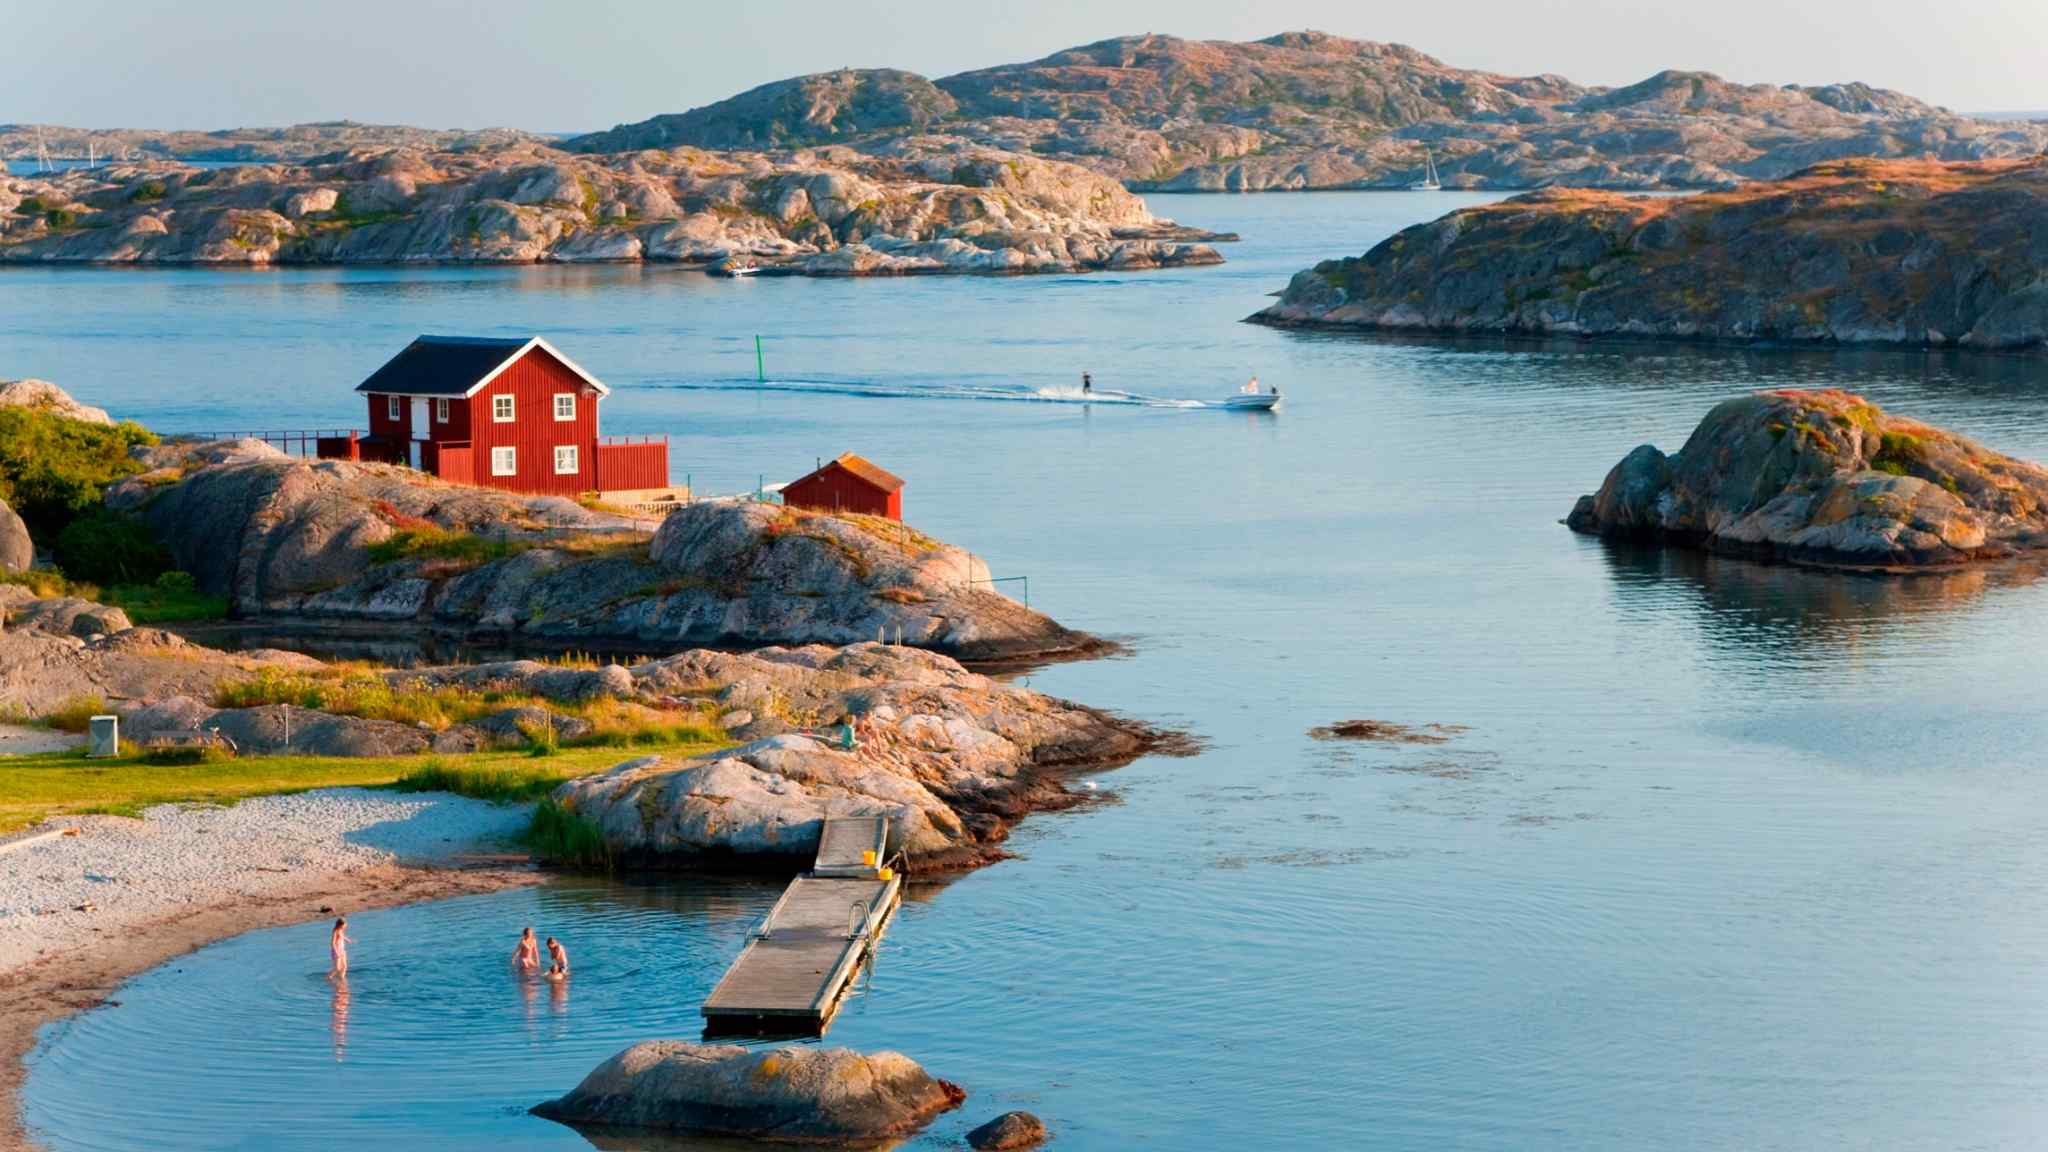 An island-hopping idyll in Sweden’s Bohuslän archipelago